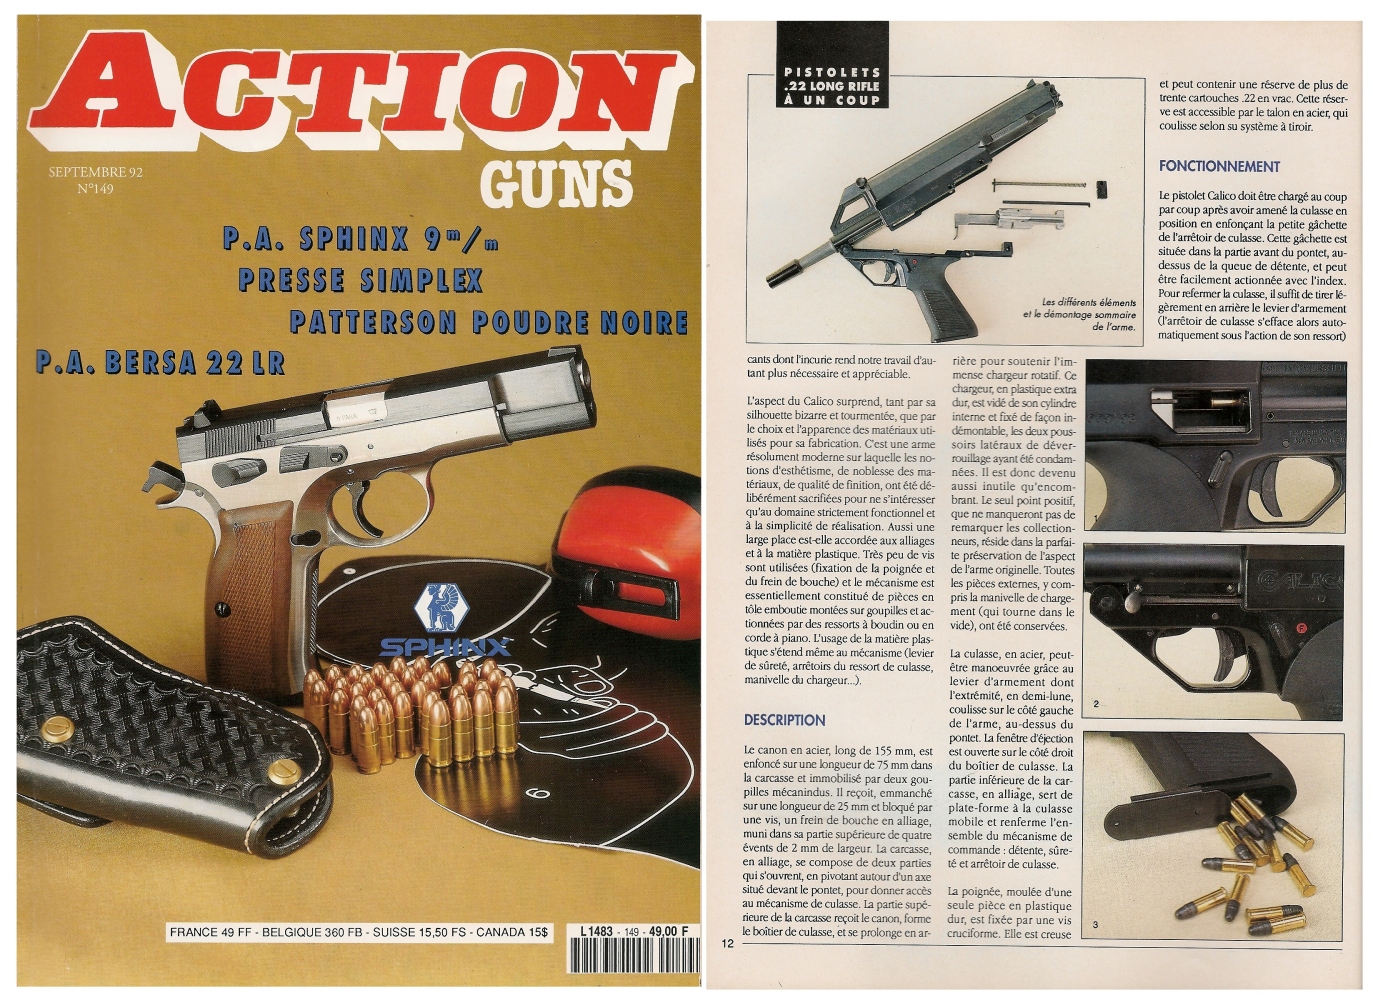 Le banc d’essai du pistolet à un coup Calico M-111 a été publié sur 5 pages dans le magazine Action Guns n°149 (septembre 1992).